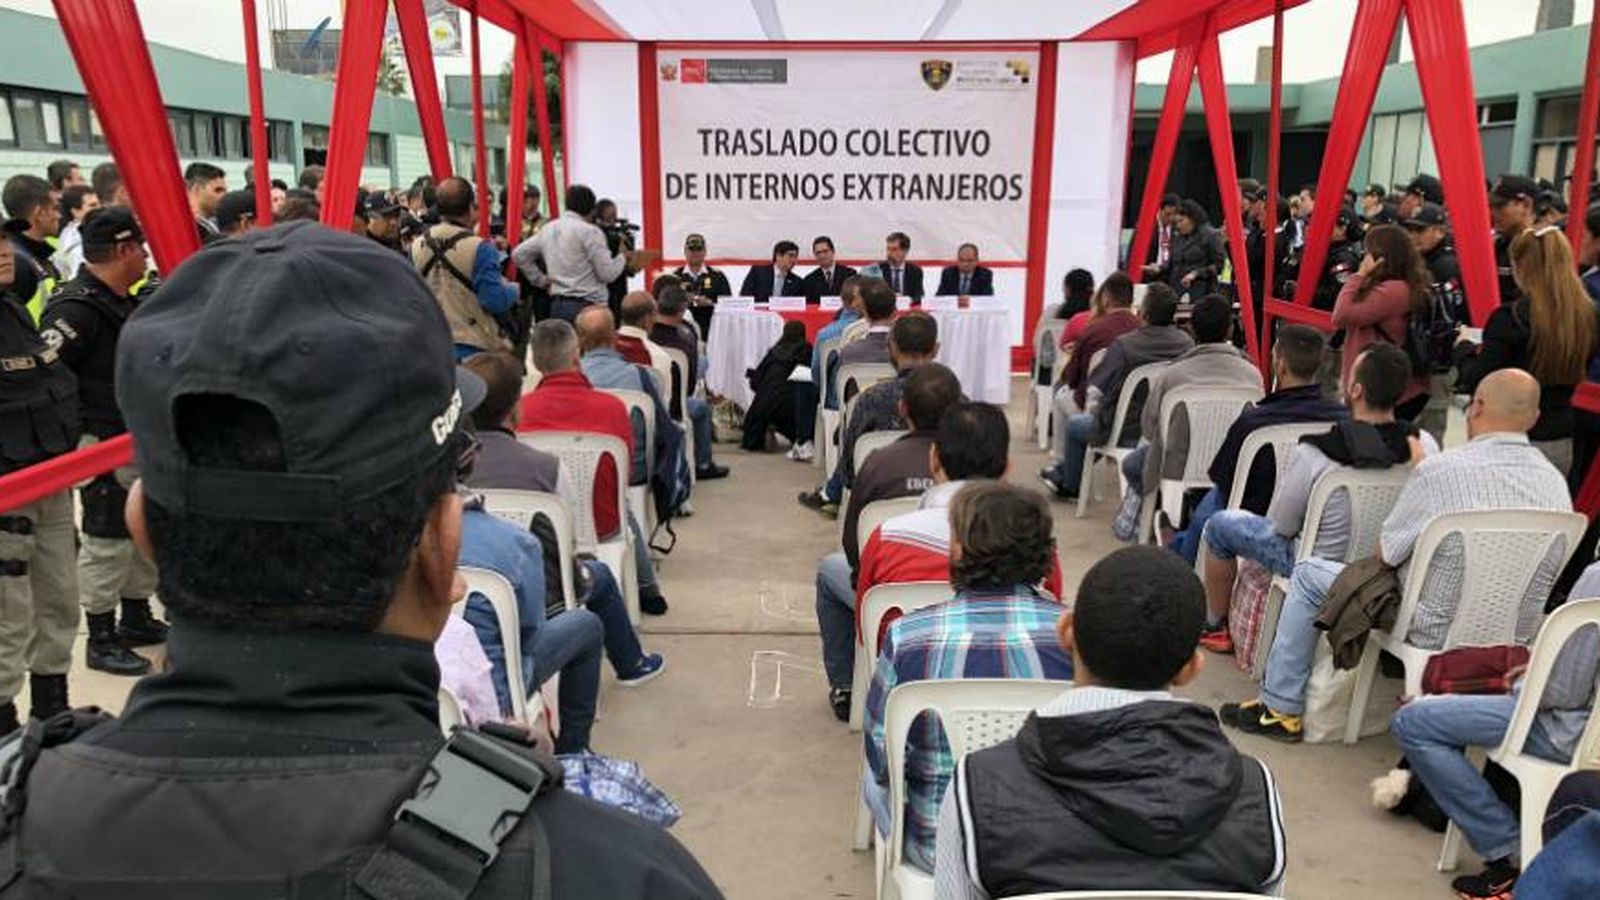 Foto: Ceremonia de entrega de los presos españoles por parte del INPE peruano a la Policía Nacional española para su traslado. 